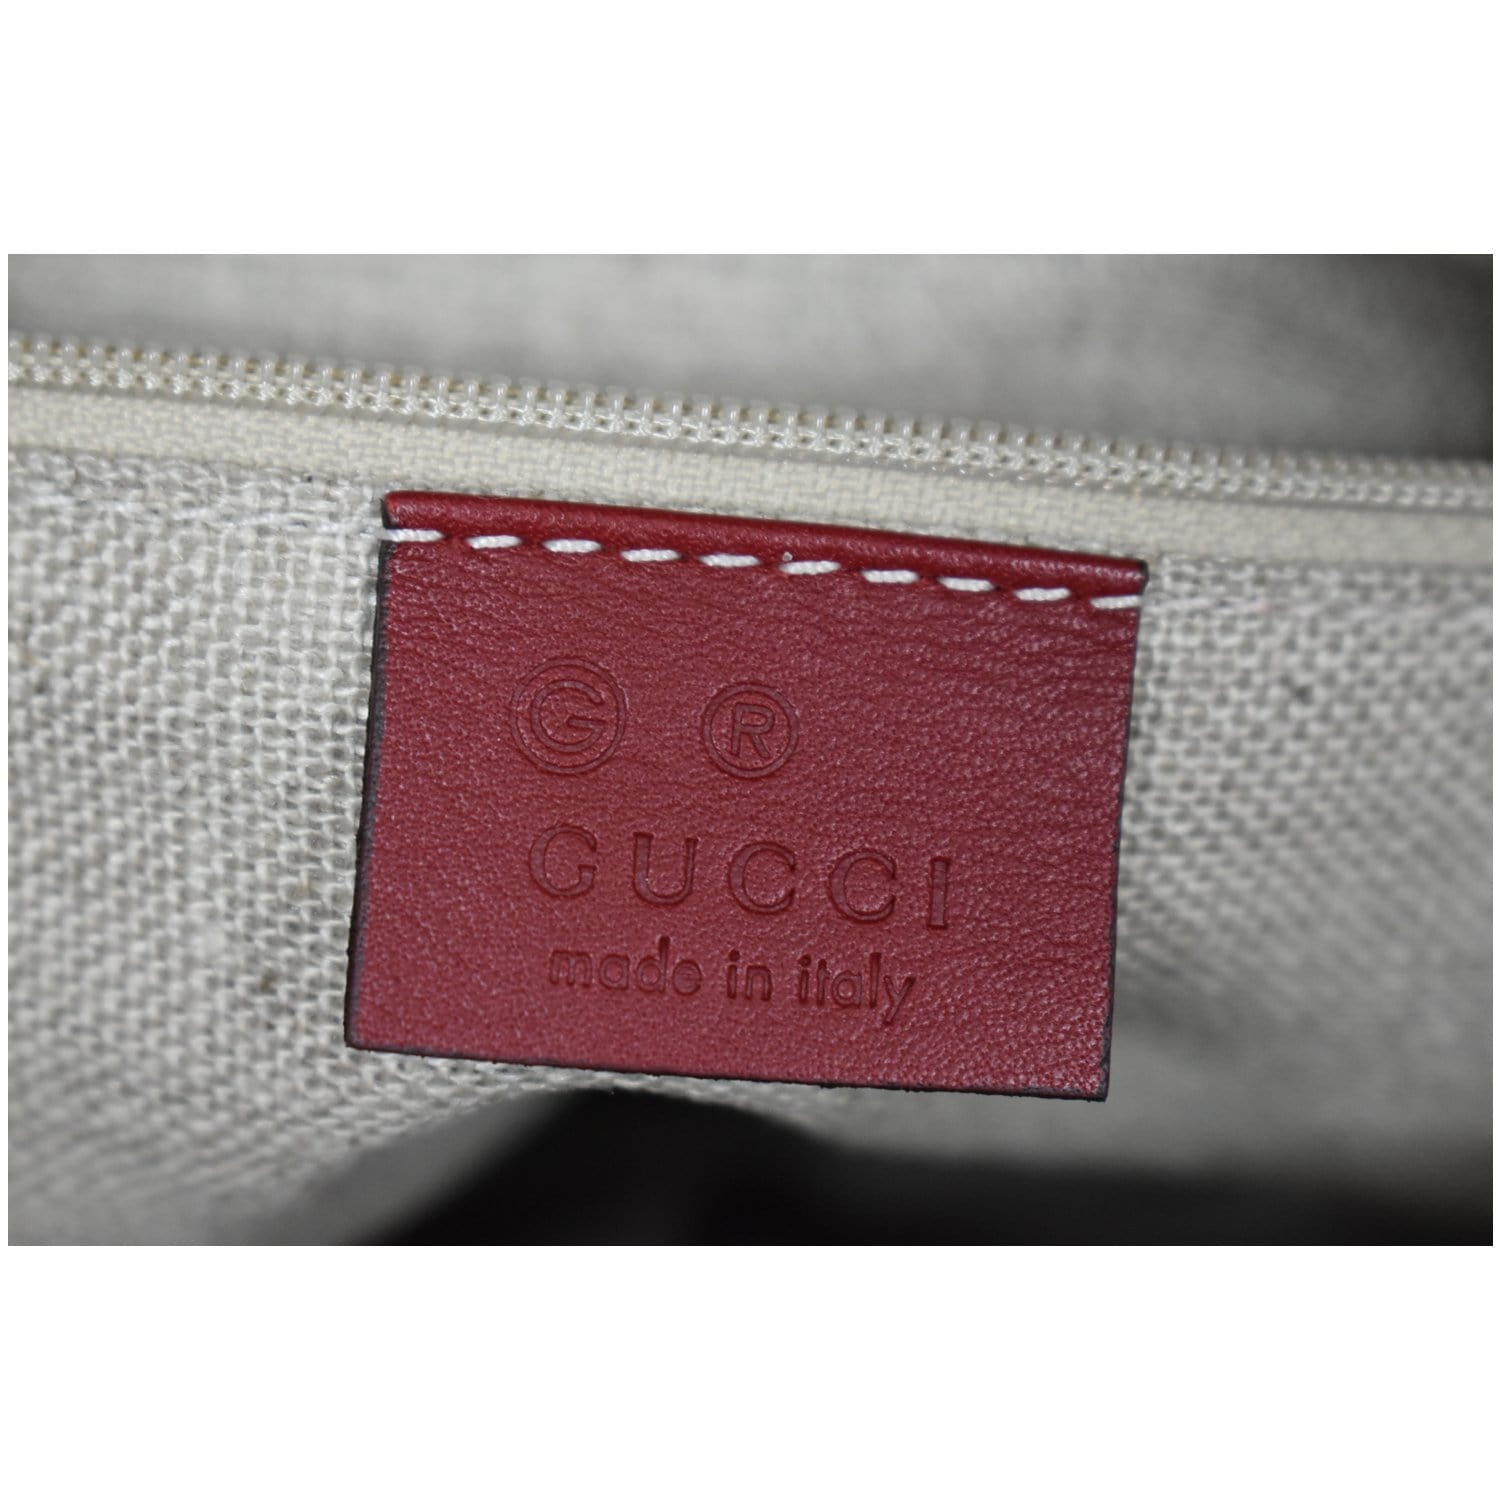 GUCCI Small Bree Microguccissima Leather Tote Crossbody Bag Red 449241